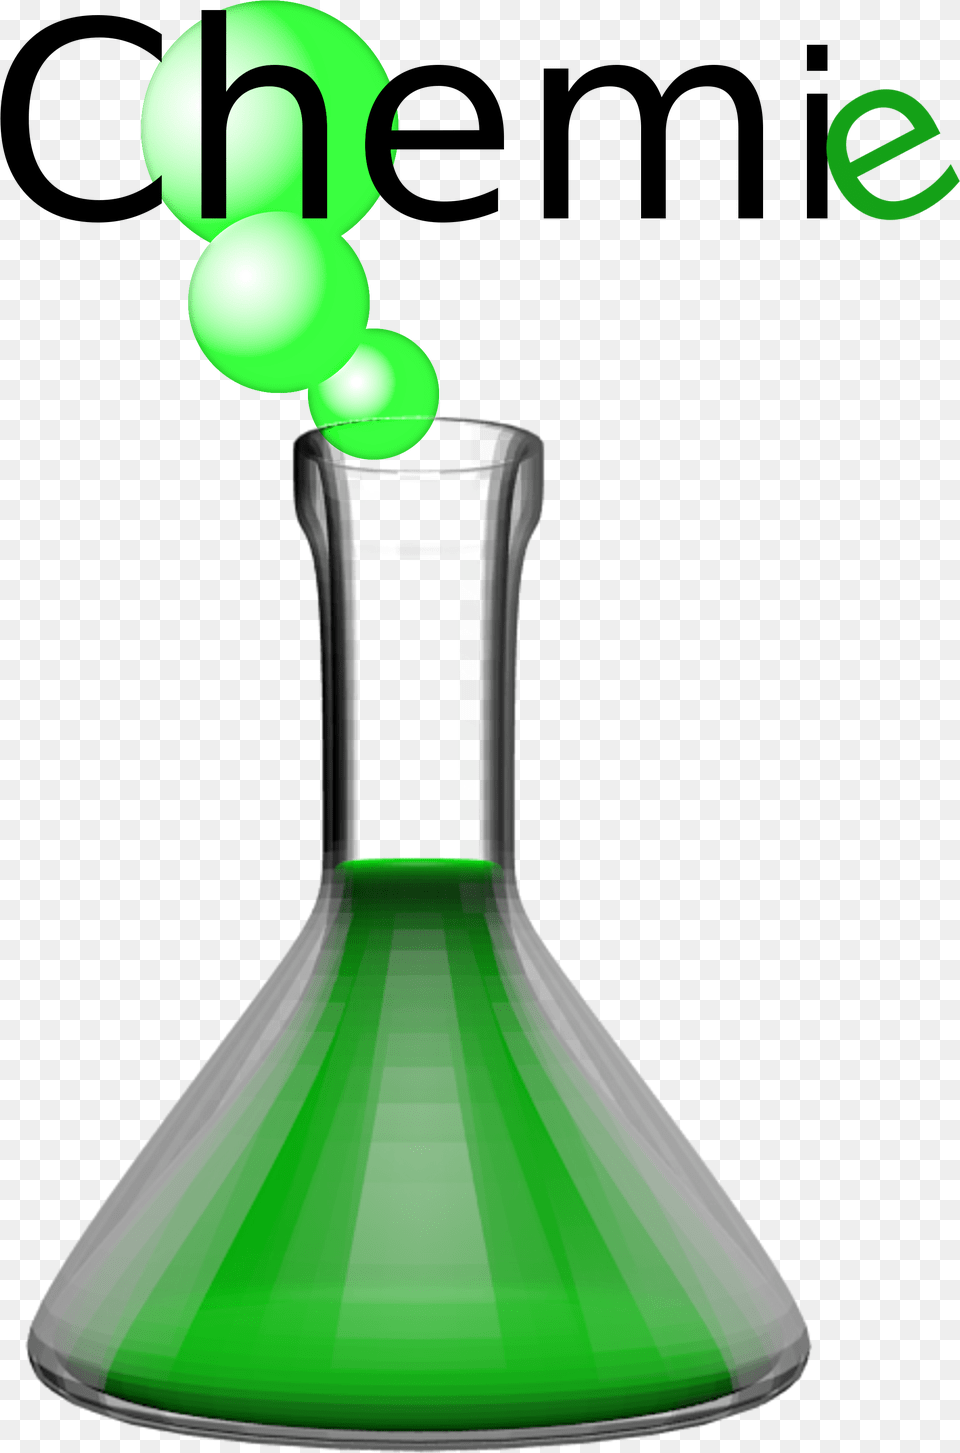 Cemi Laboratory Flask Glass Glass Laboratory Flask, Light, Green, Smoke Pipe, Balloon Free Png